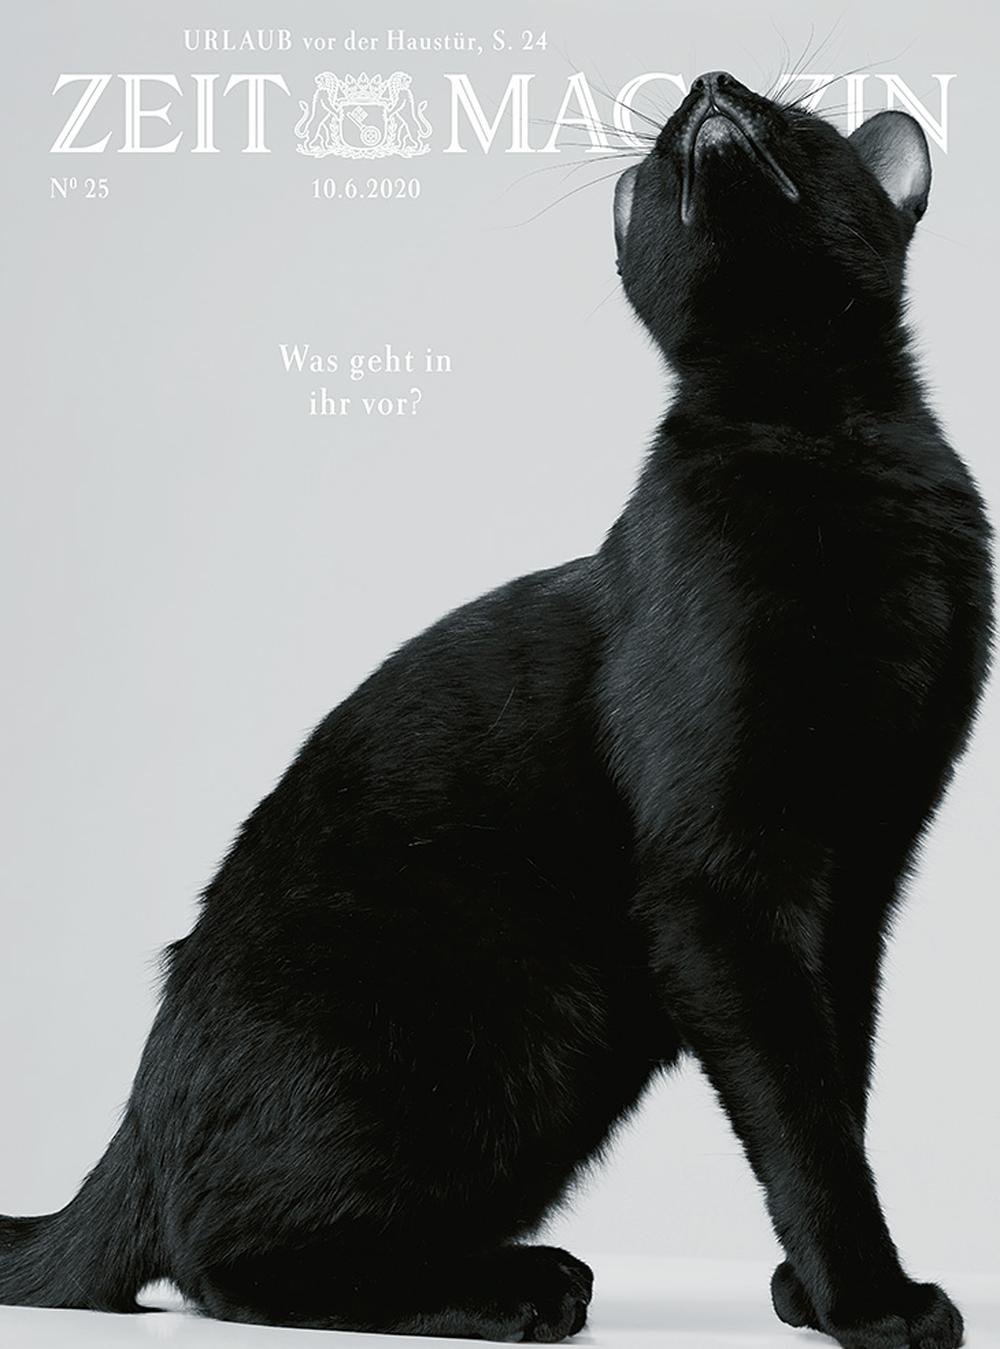 Eine Katze - thematische Zusammenarbeit zwischen er Louis Vuitton